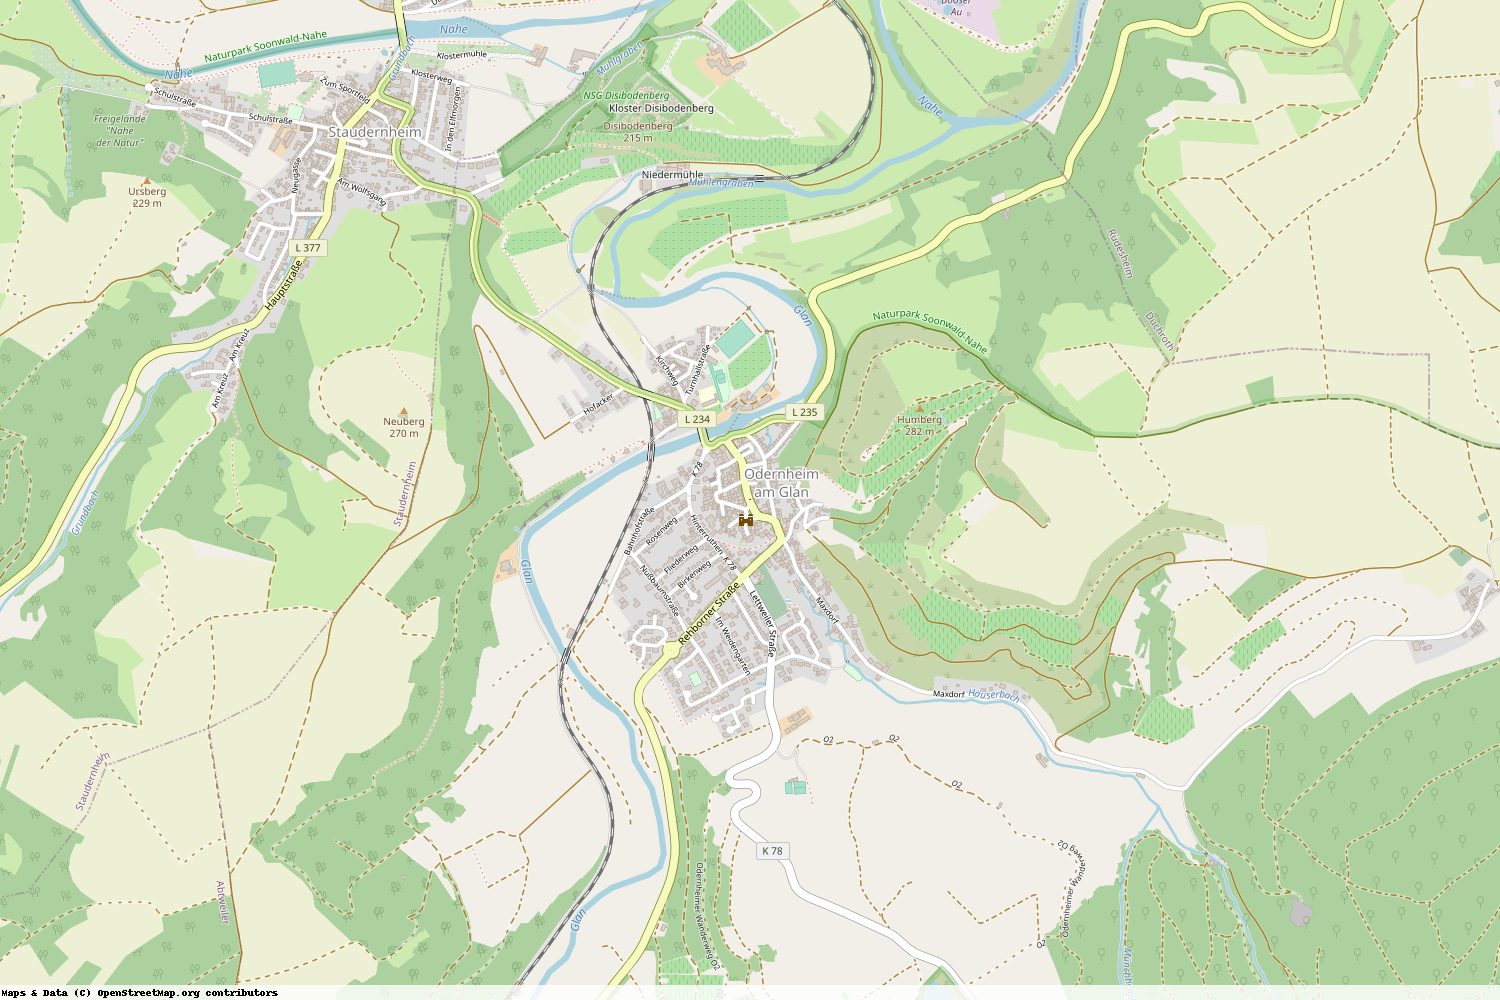 Ist gerade Stromausfall in Rheinland-Pfalz - Bad Kreuznach - Odernheim am Glan?